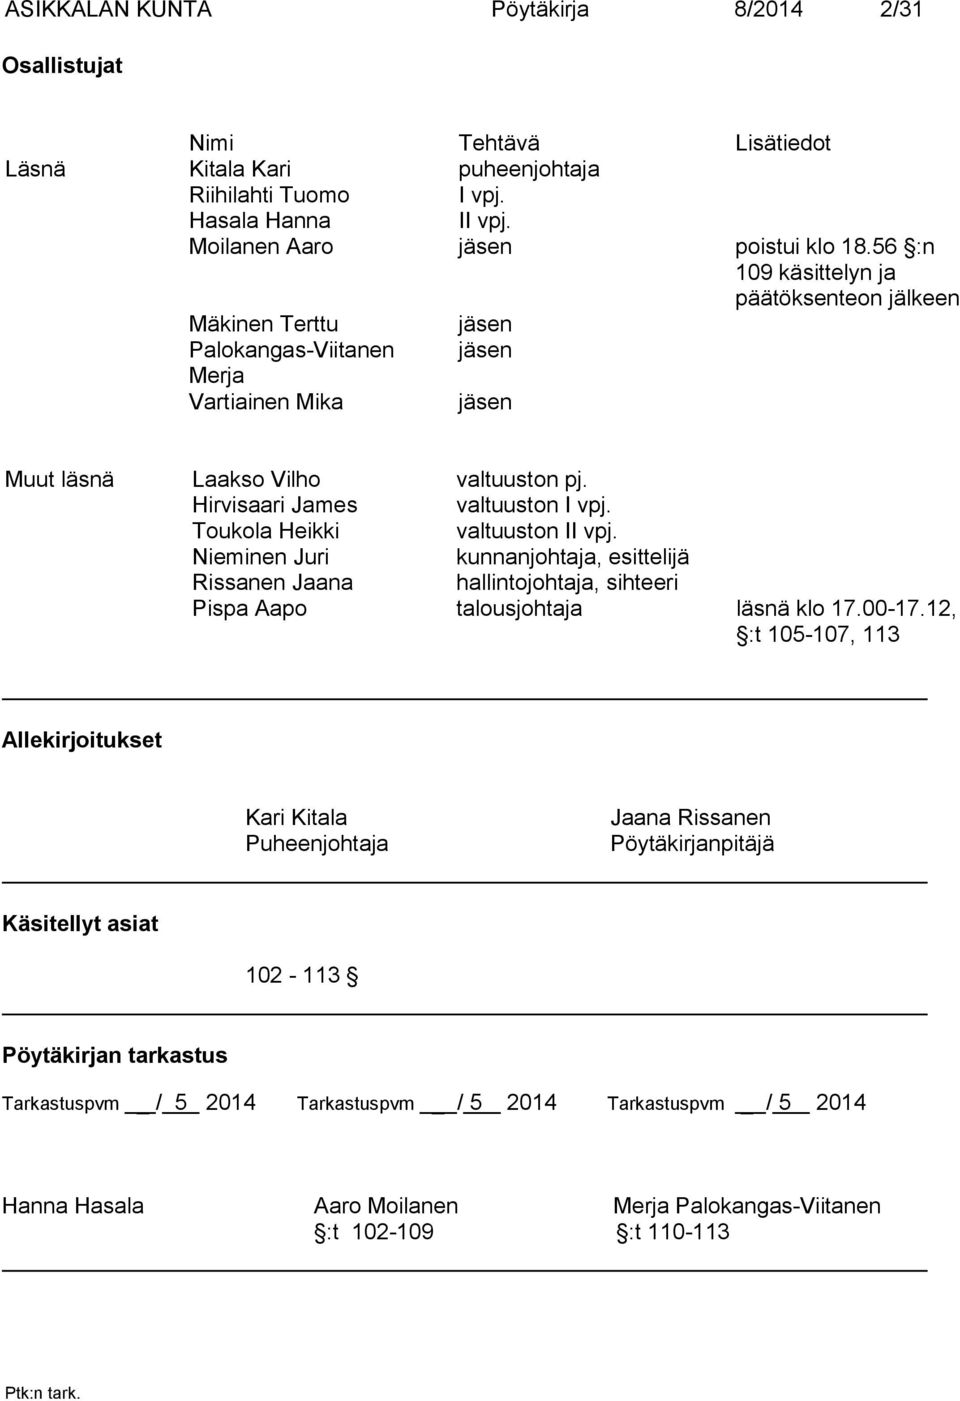 Toukola Heikki valtuuston II vpj. Nieminen Juri kunnanjohtaja, esittelijä Rissanen Jaana hallintojohtaja, sihteeri Pispa Aapo talousjohtaja läsnä klo 17.00-17.